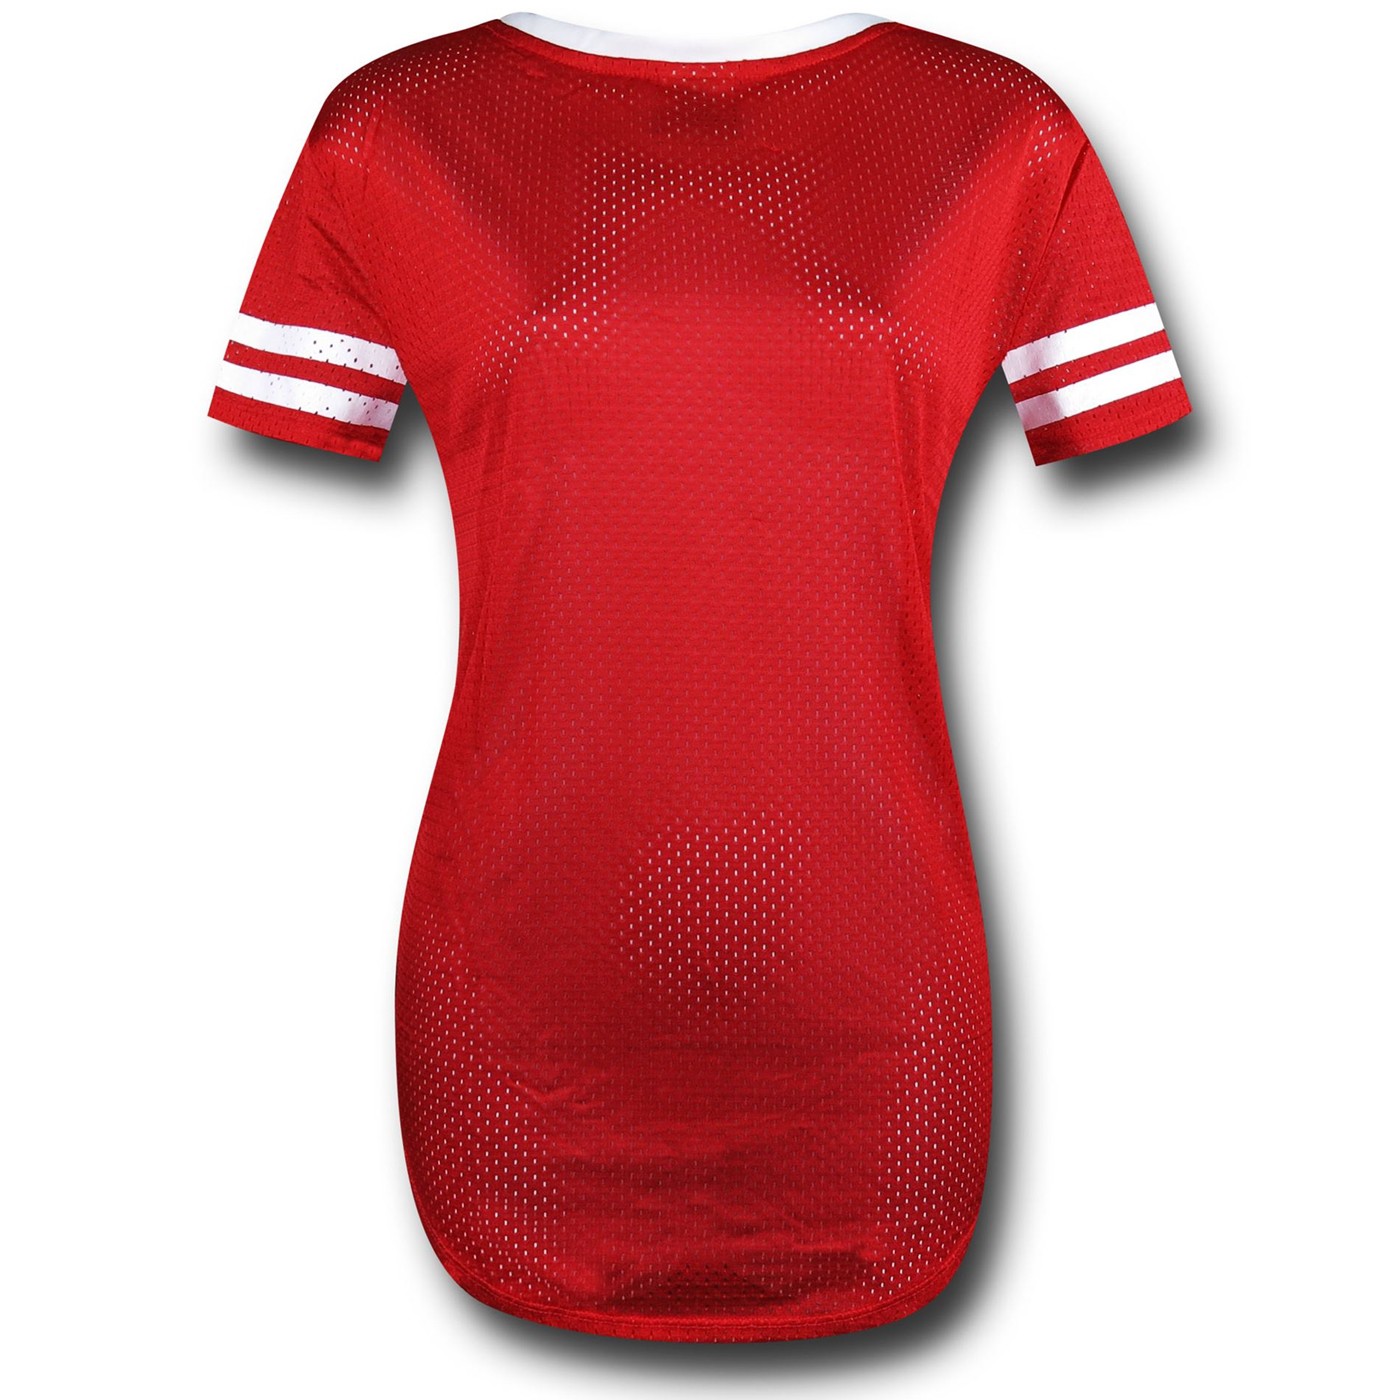 Wonder Woman Red Hockey Women's T-Shirt